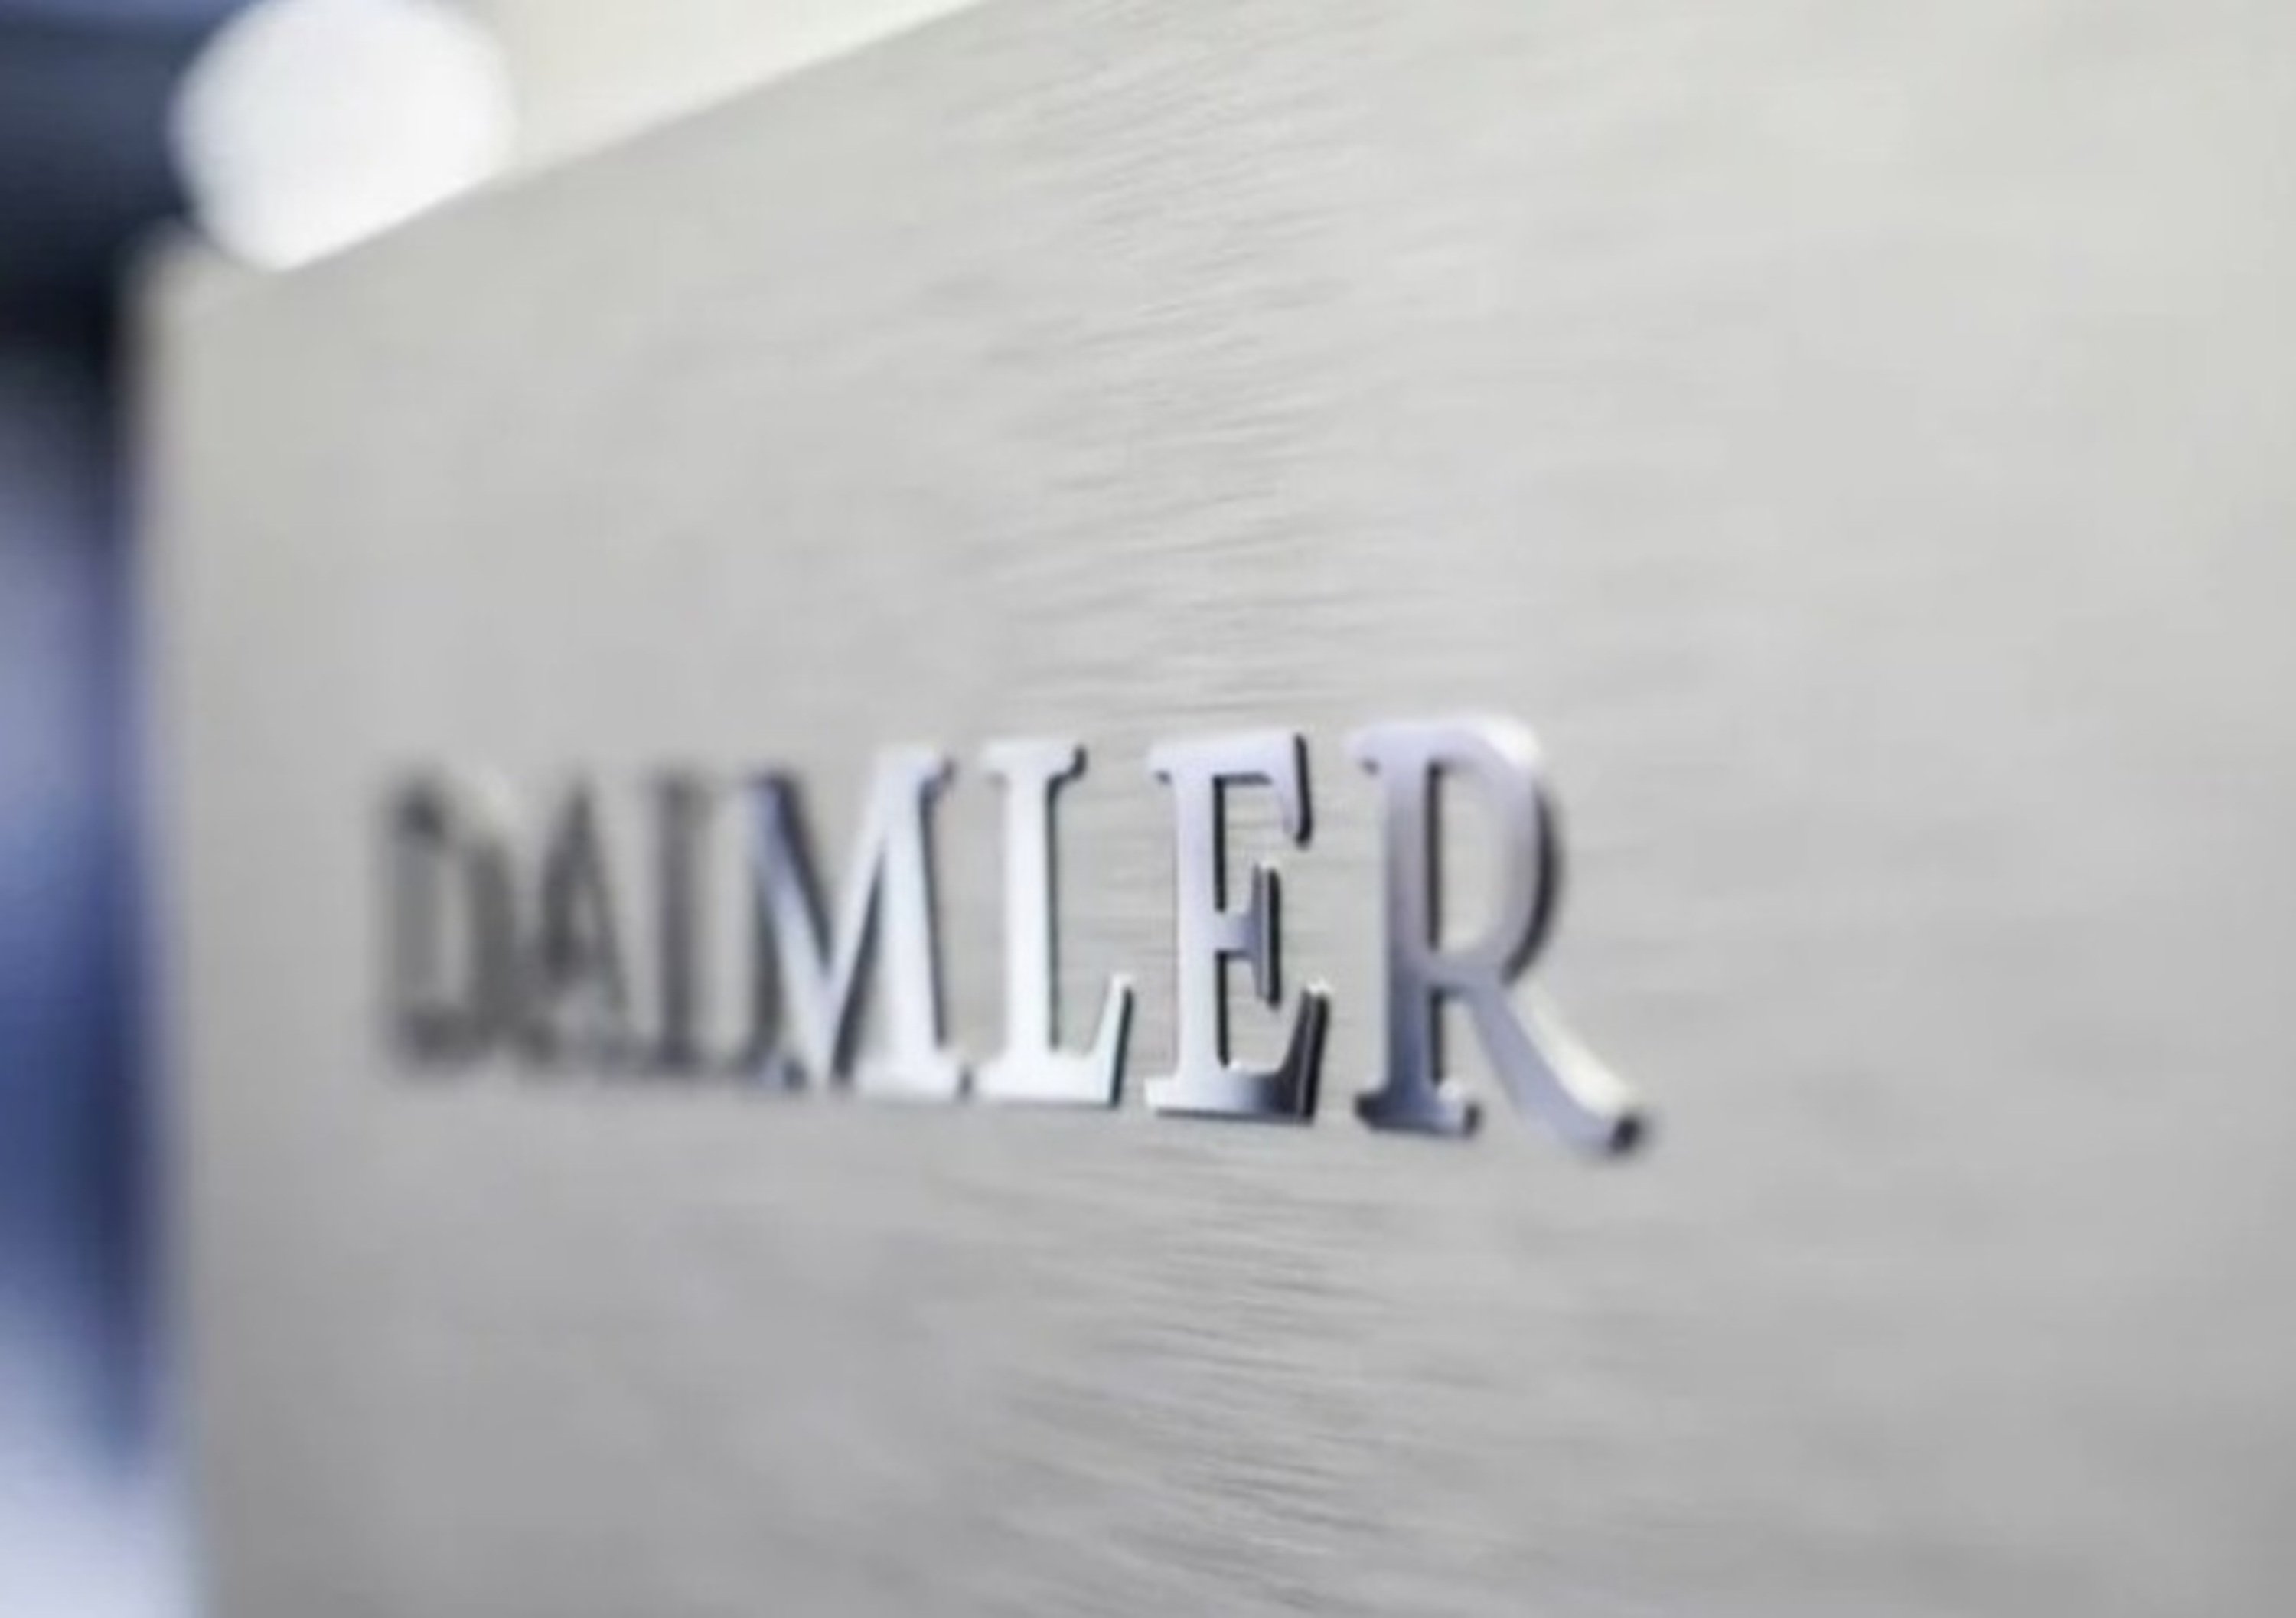 Daimler diventer&agrave; Mercedes-Benz dopo lo spin-off della divisione Trucks